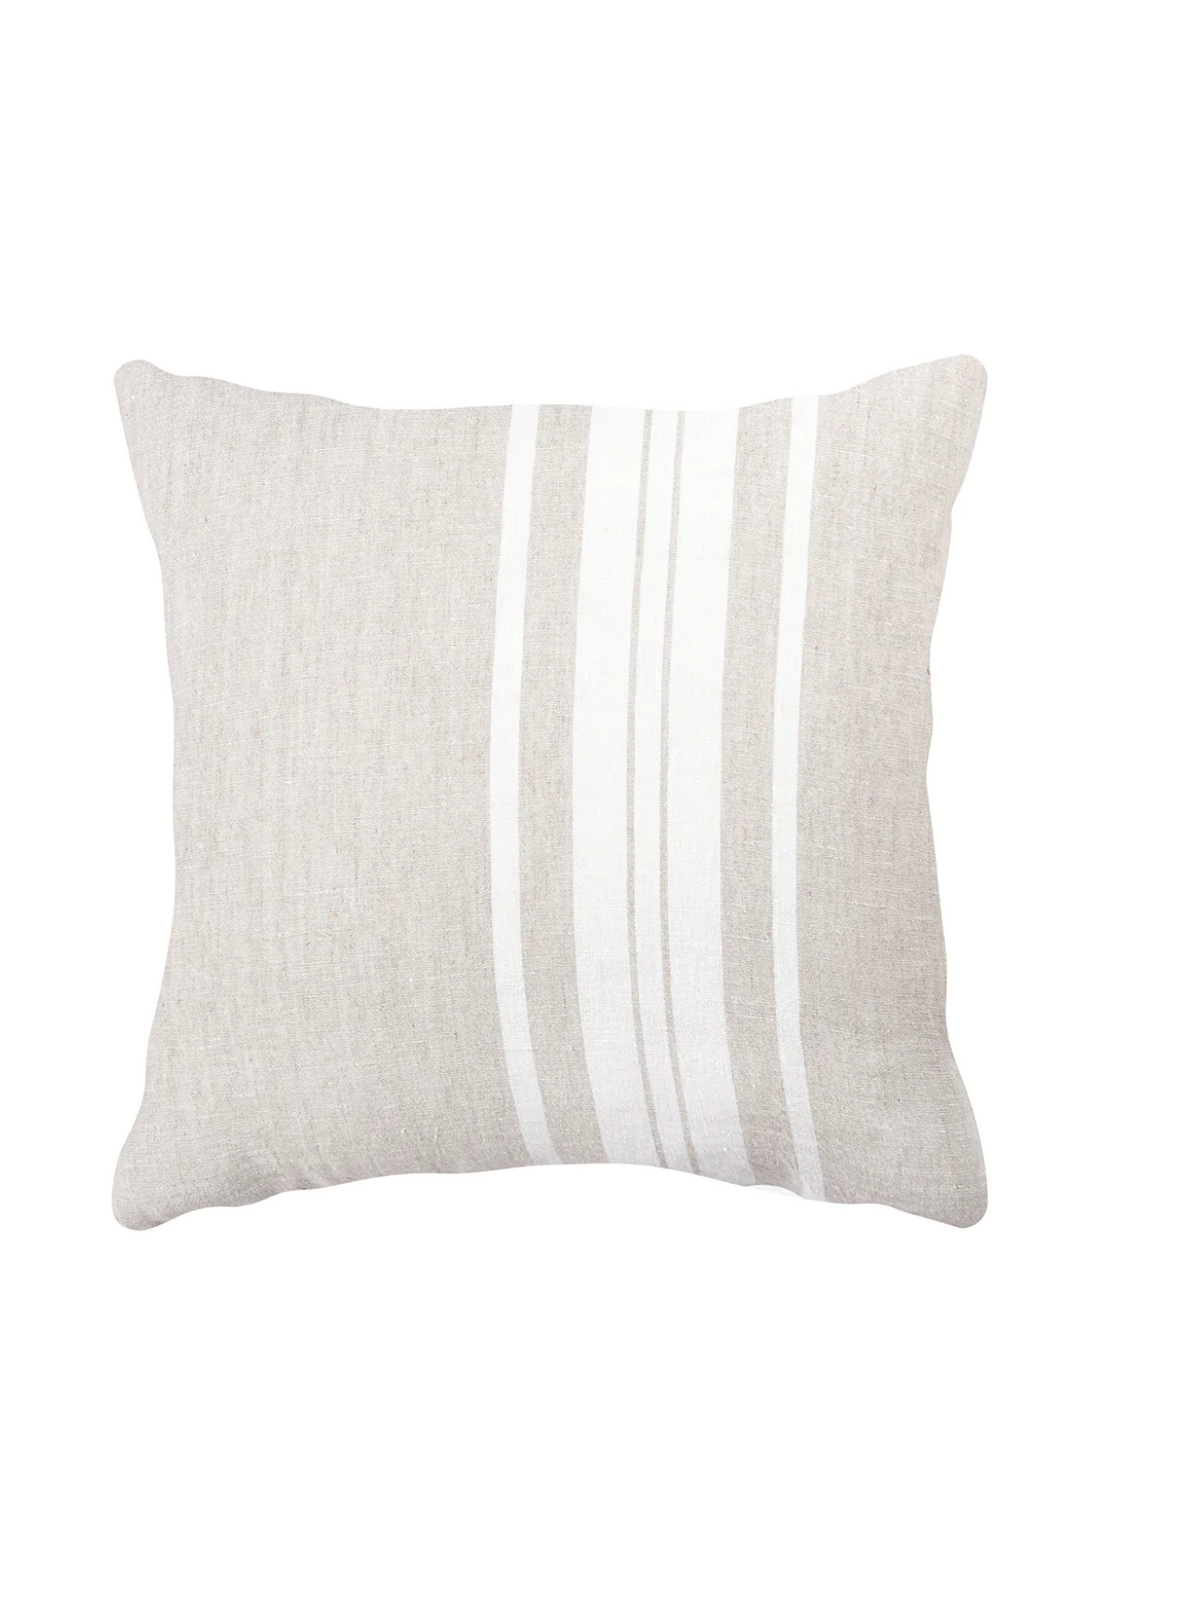 Natural Beige Bold Stripes Linen Pillows